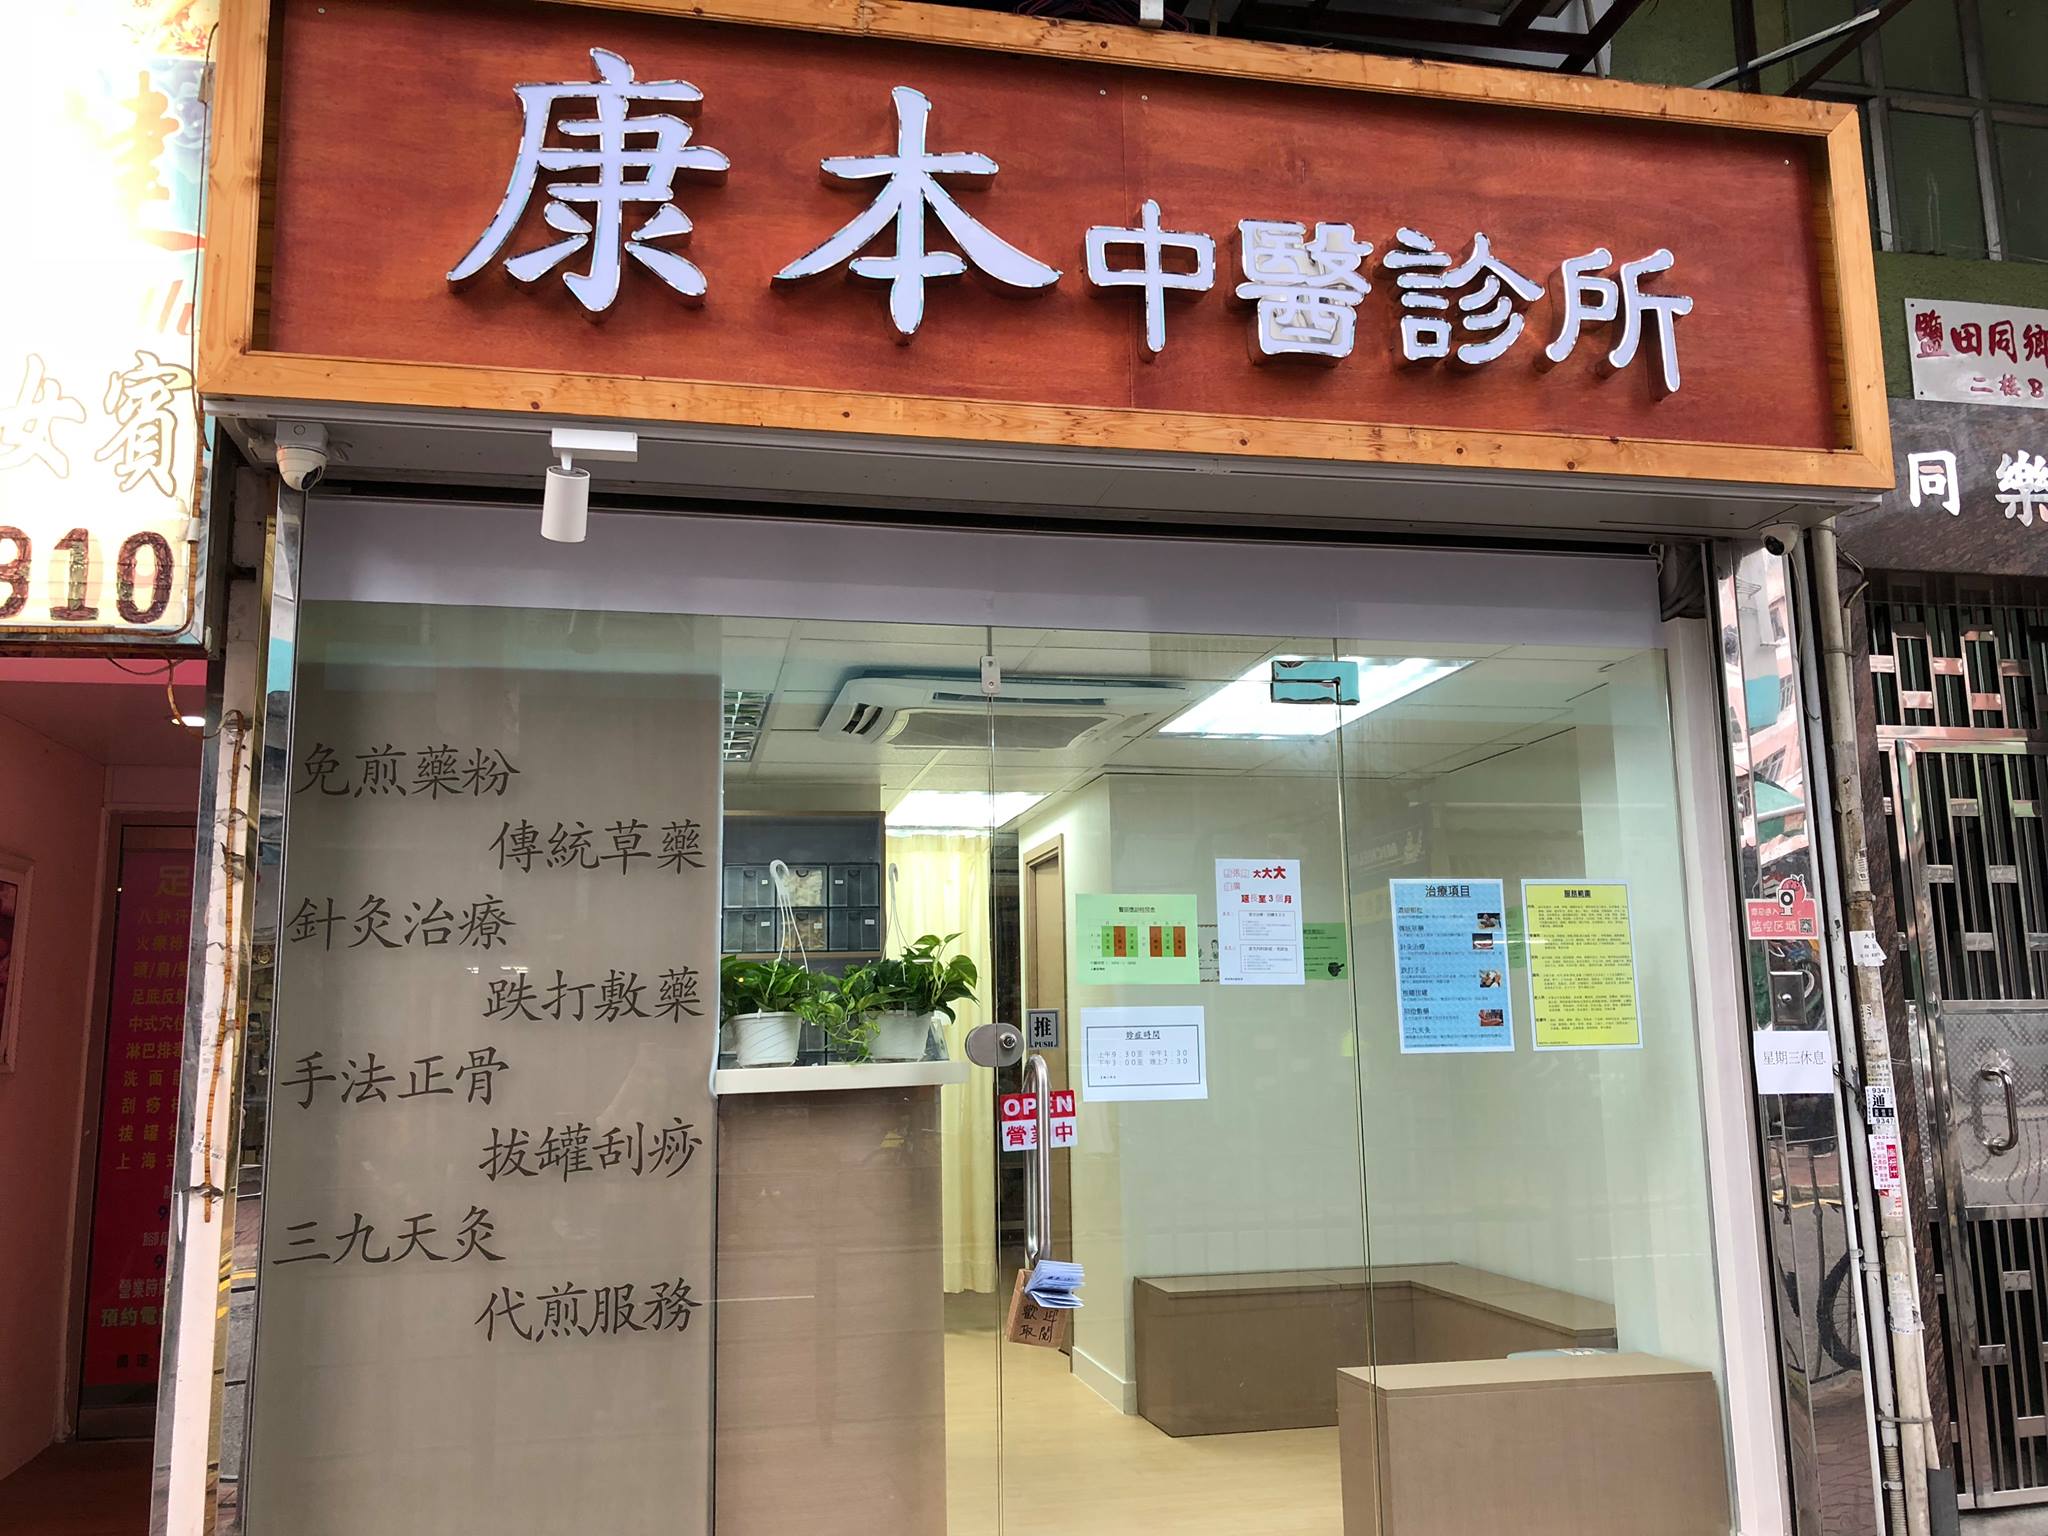 中医内科: 康本中醫診所